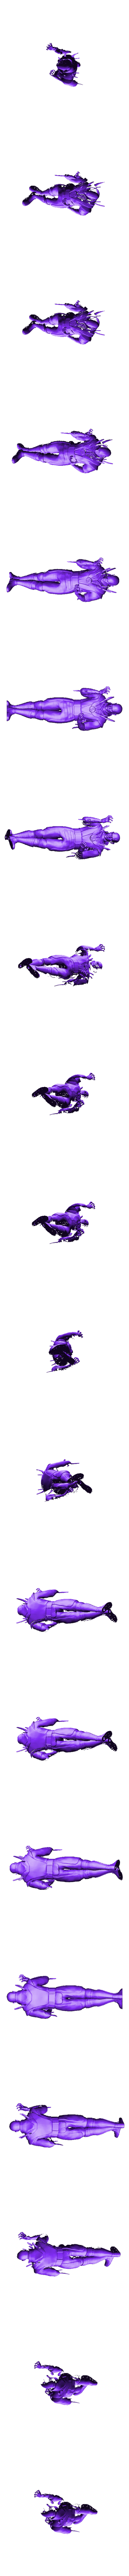 QUANCHI.stl Download STL file Mortal Kombat 4 Quan-chi Statue • 3D printer design, Tronic3100